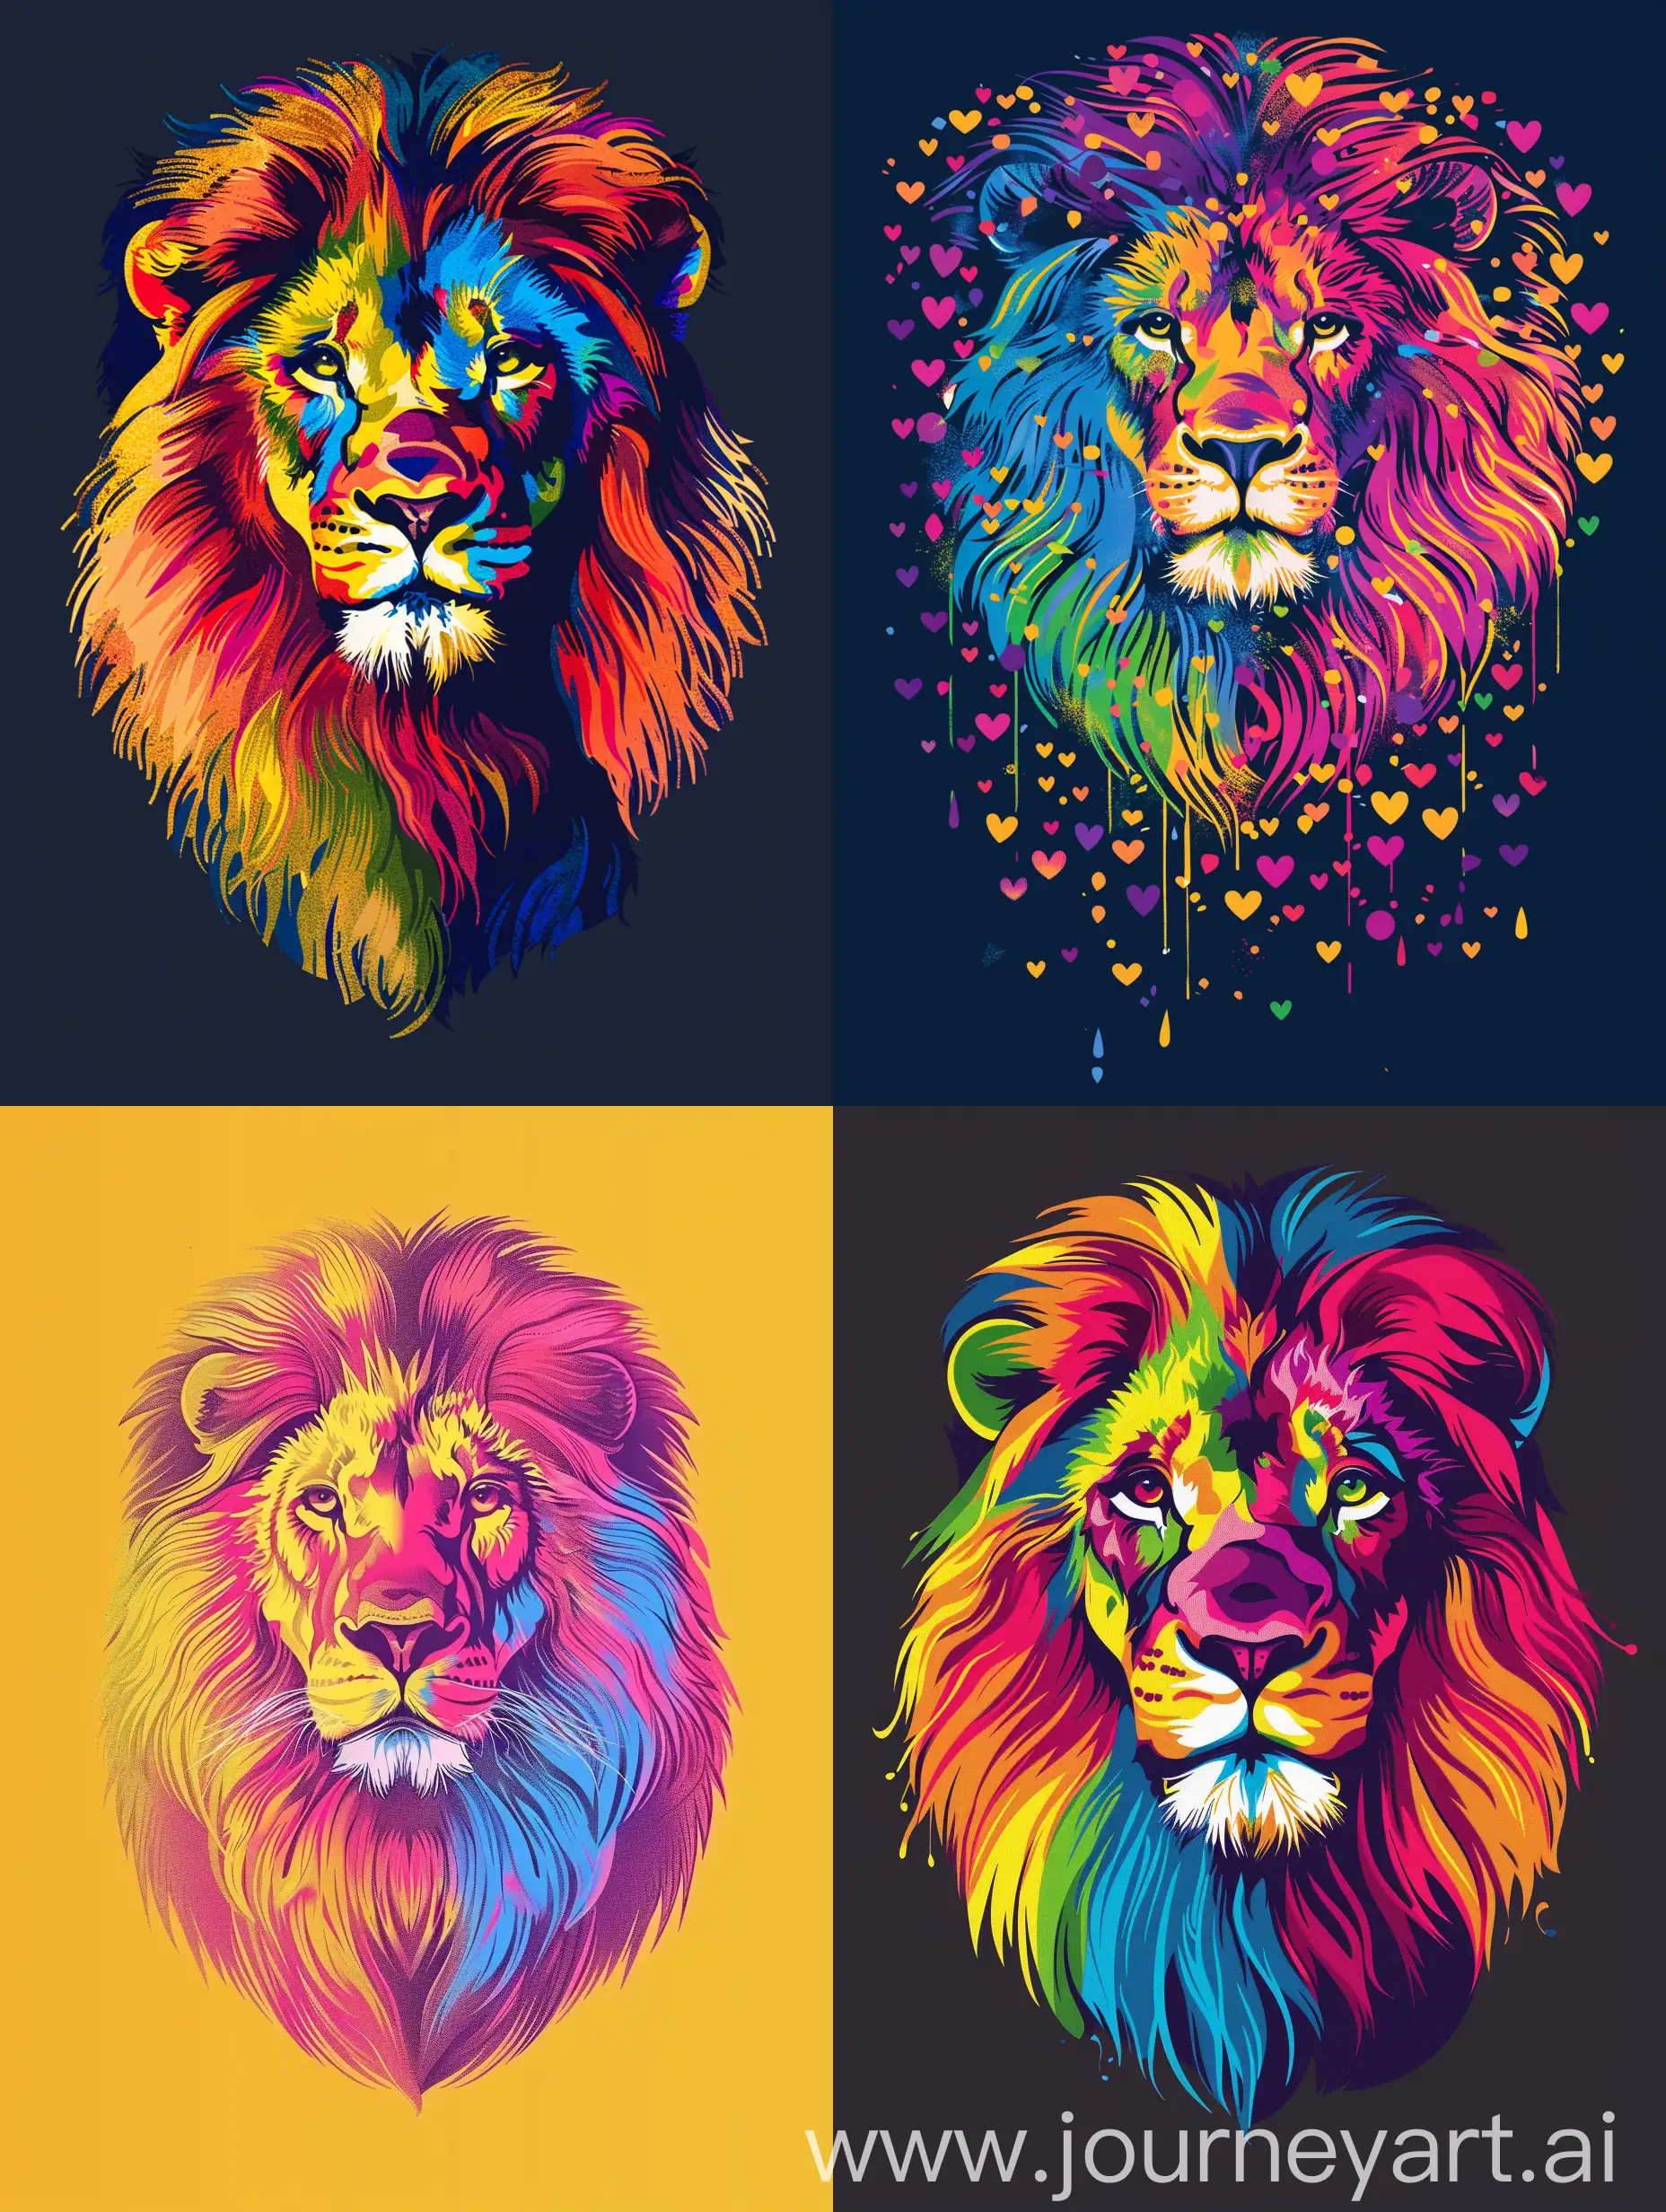 Wygeneruj obrazek na koszulkę z okazji pride month, niech nawiązuje do miłości do wszystkich (panseksualizm). Wzór powinien również zawierać lwa, który jest symbolem firmy Publicis Groupe. 